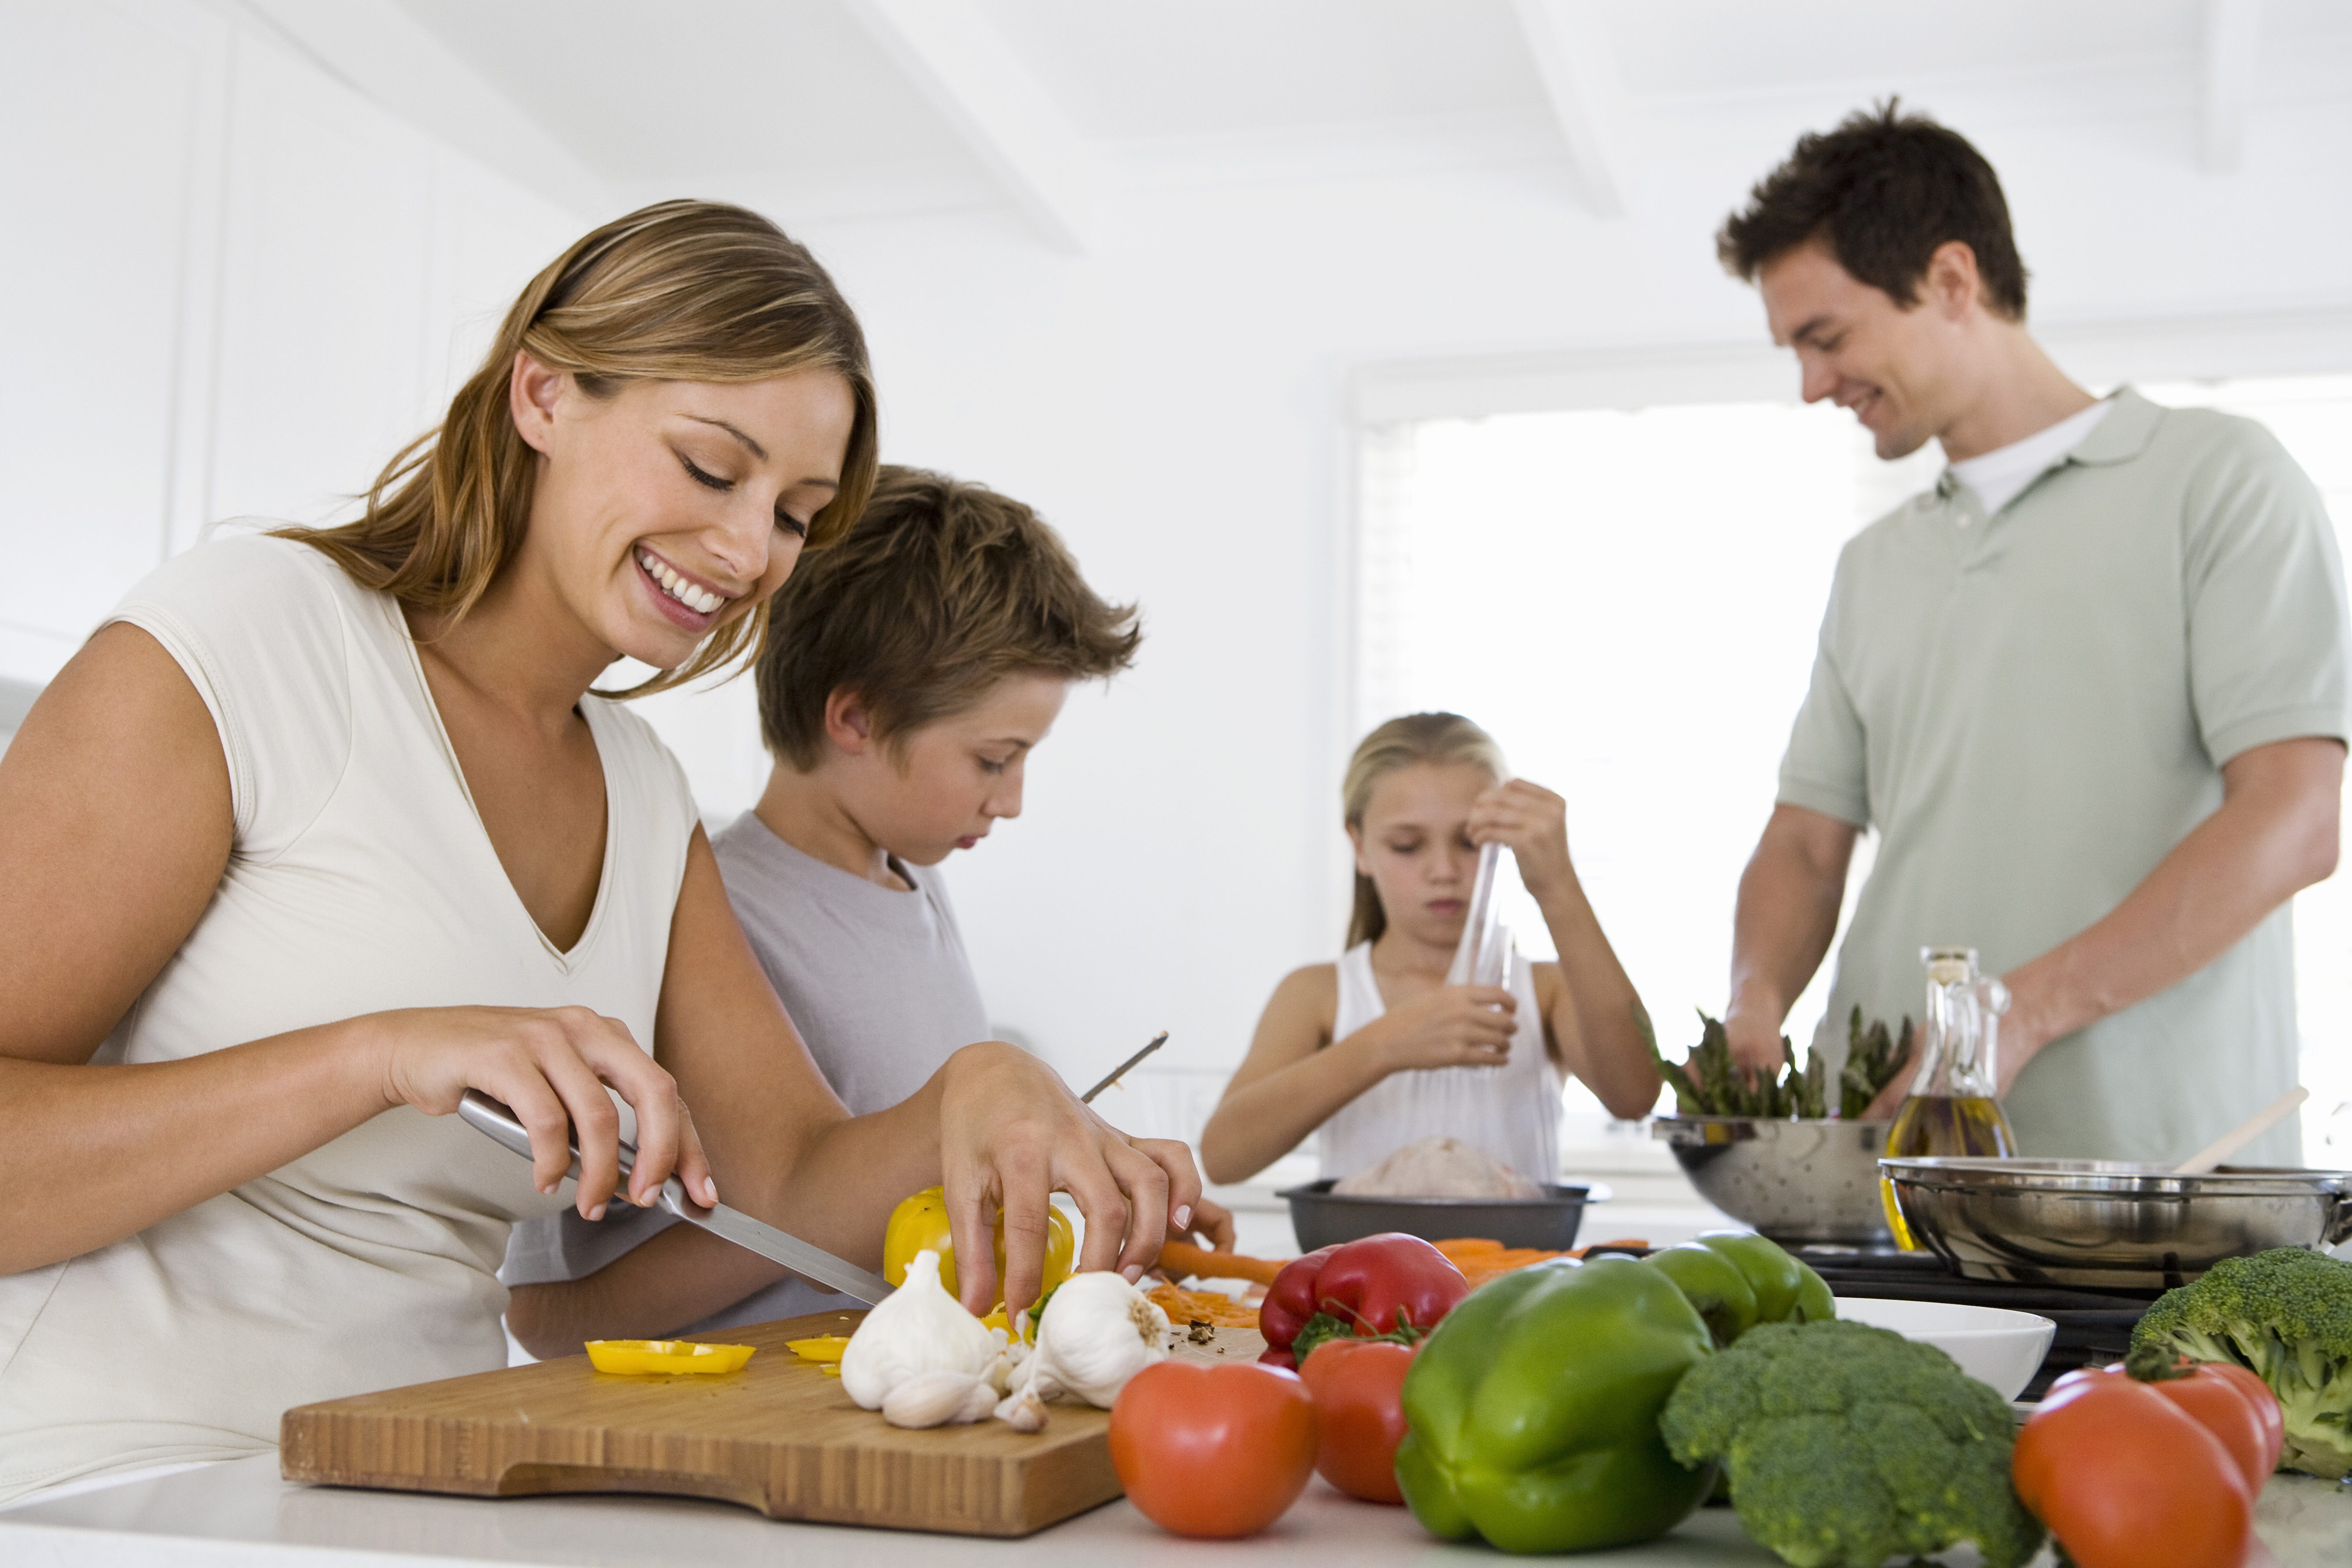 Потребность заботиться. Здоровый образ жизни в скиье. Здоровое питание в семье. Домашнее хозяйство. Правильное питание семья.